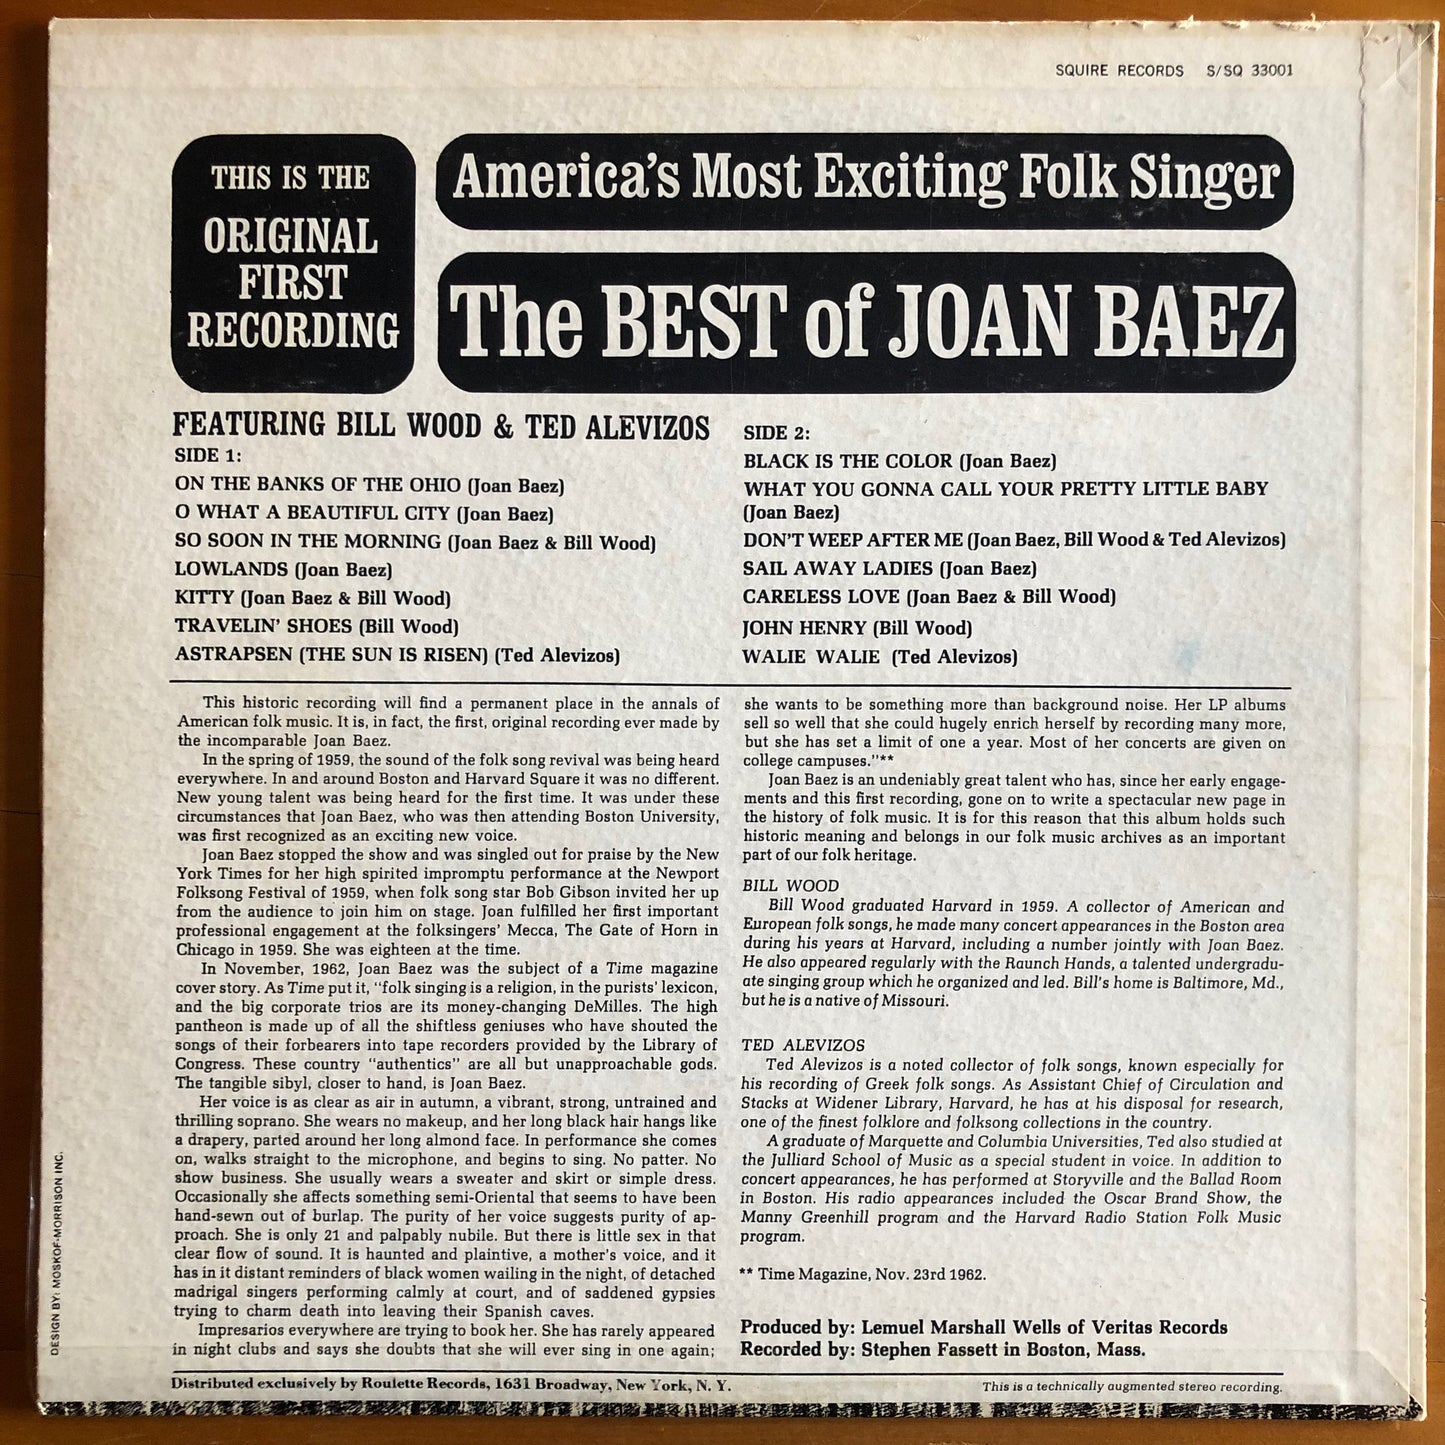 Joan Baez - The Best of Joan Baez